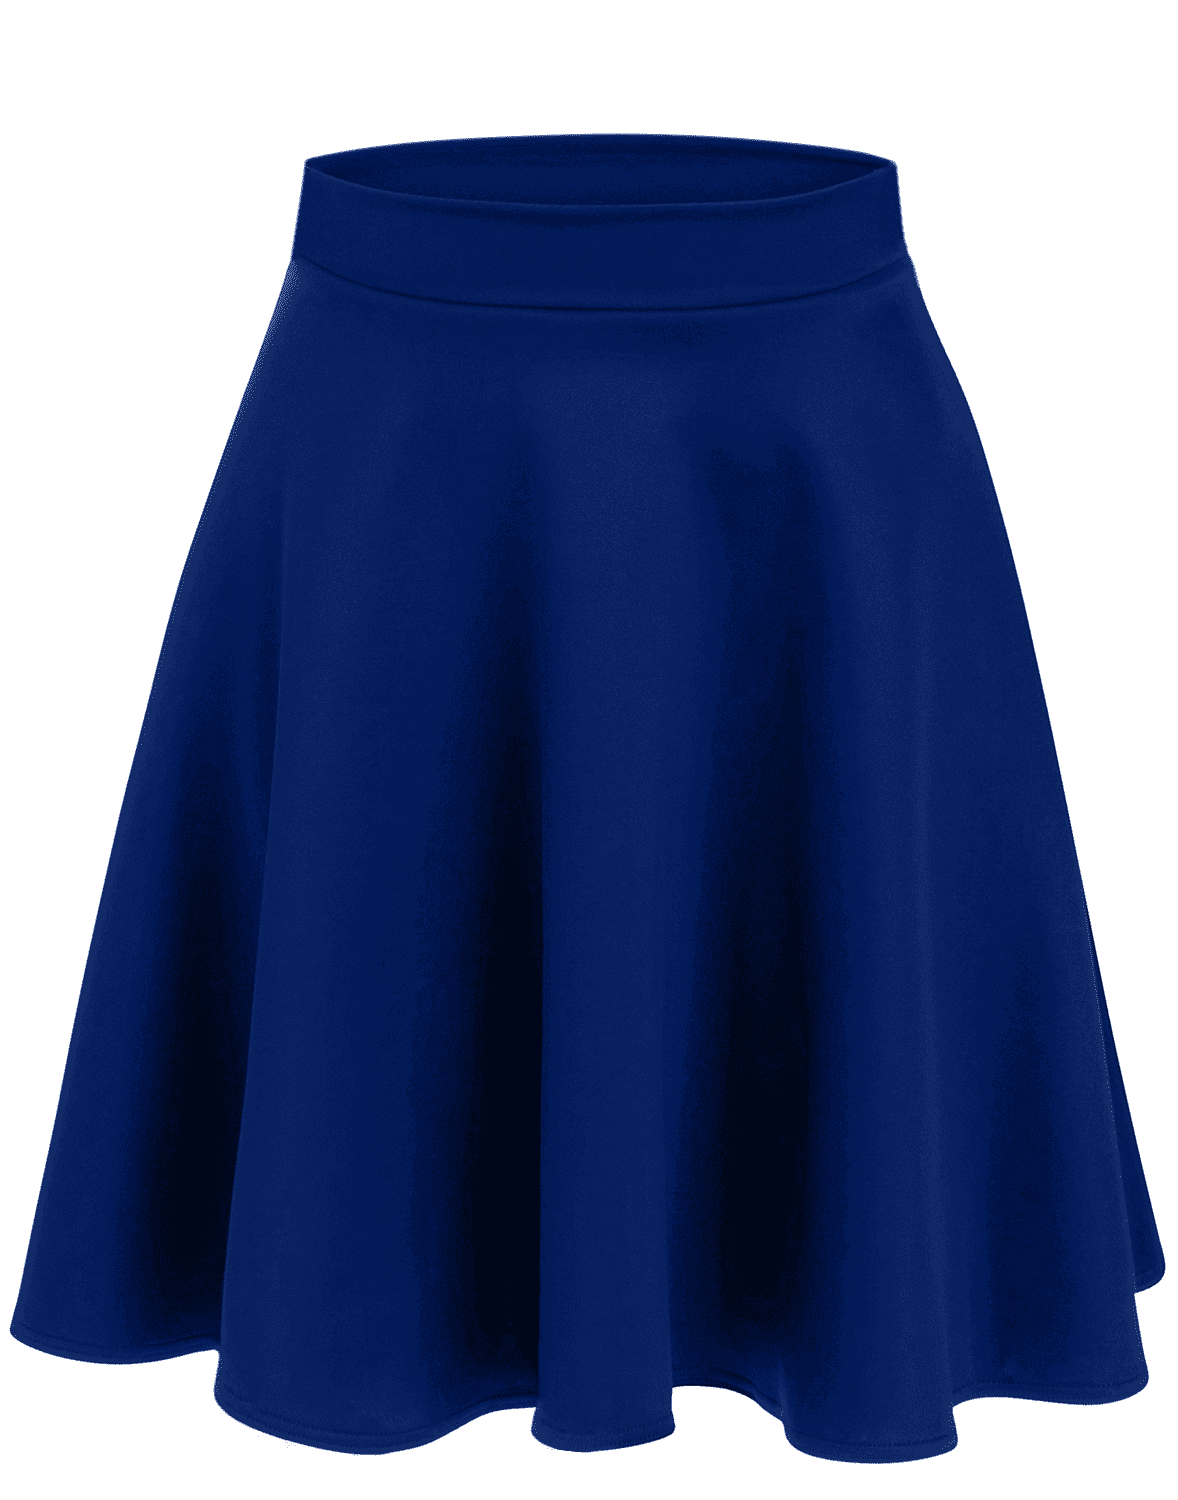 Blue skater skirt